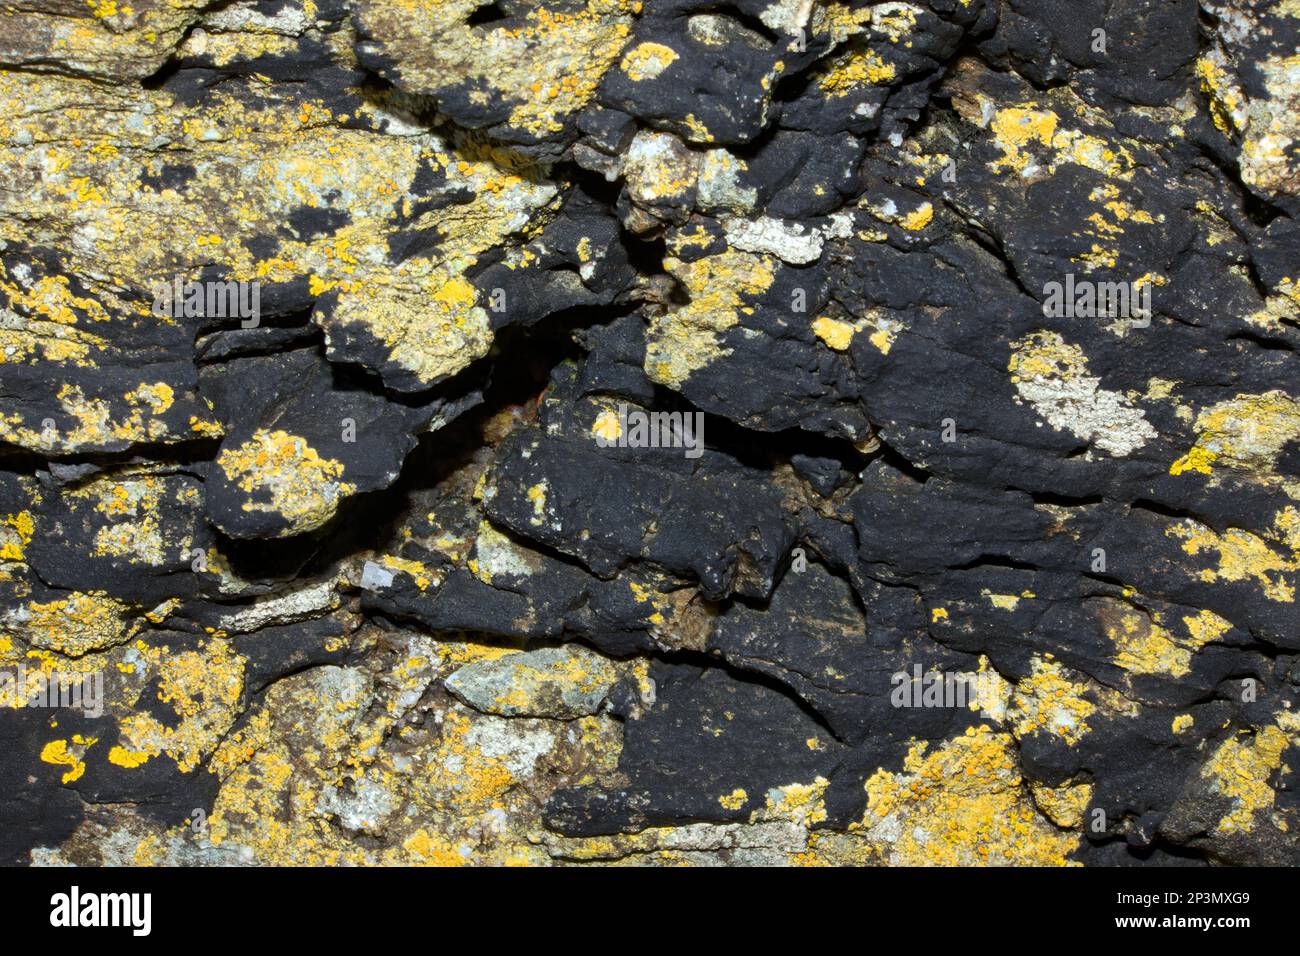 Die schwarze, krustose Lichen Hydropunctaria maura findet sich häufig auf harten Felsen in der Gezeitenzone. Es ist weltweit vertrieben. Stockfoto